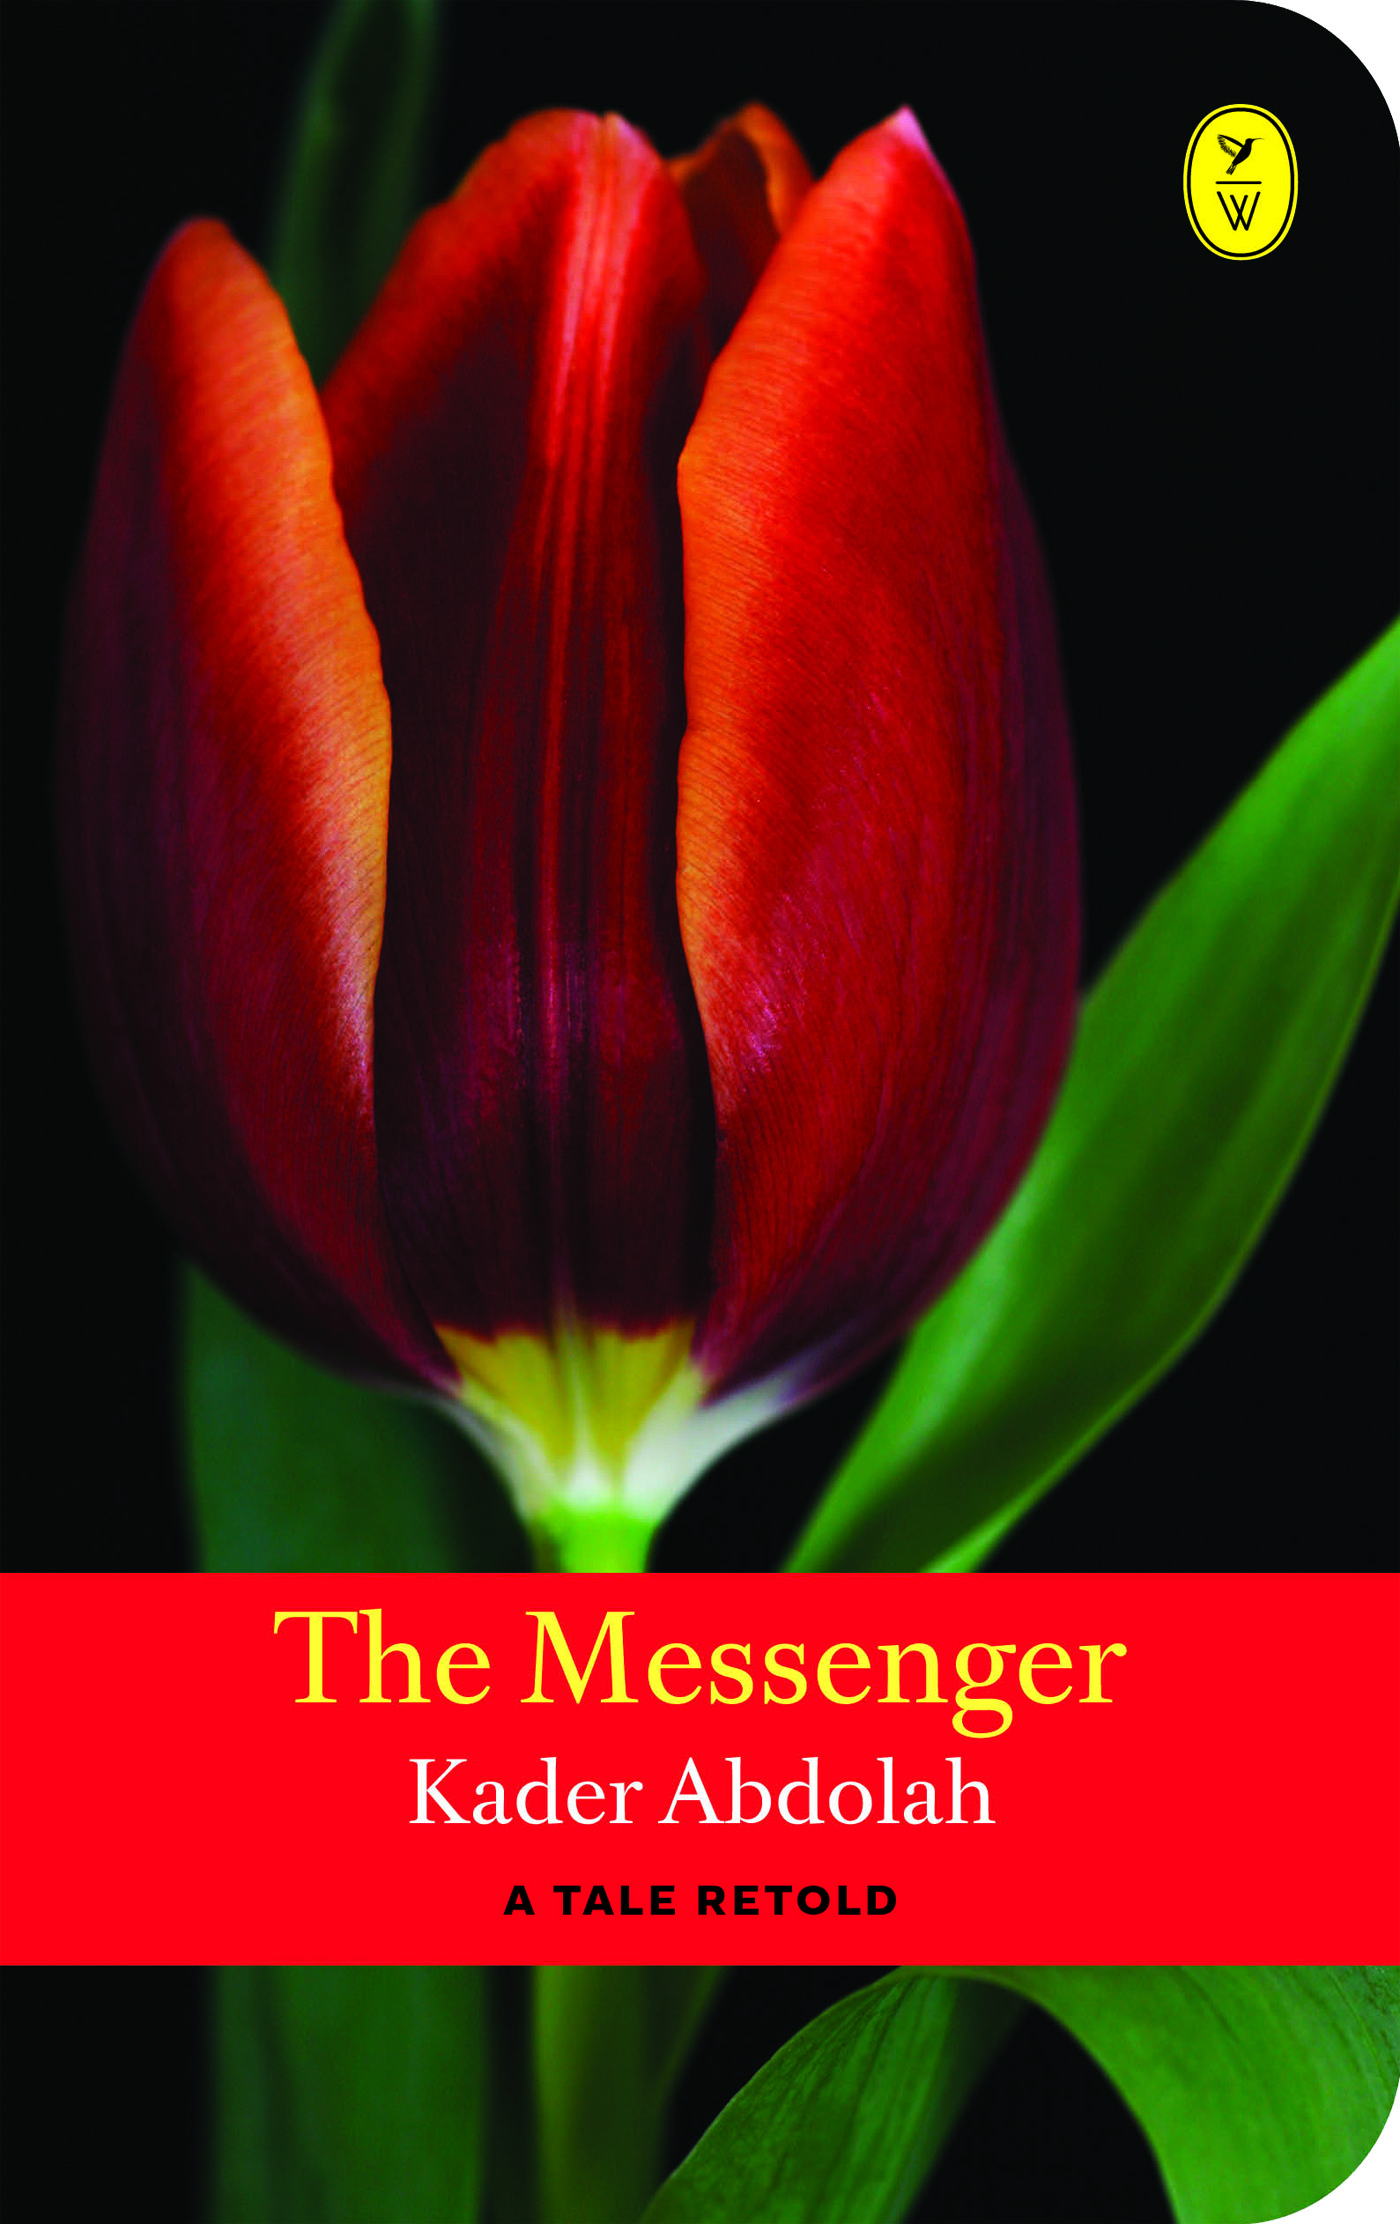 The messenger (Ebook)